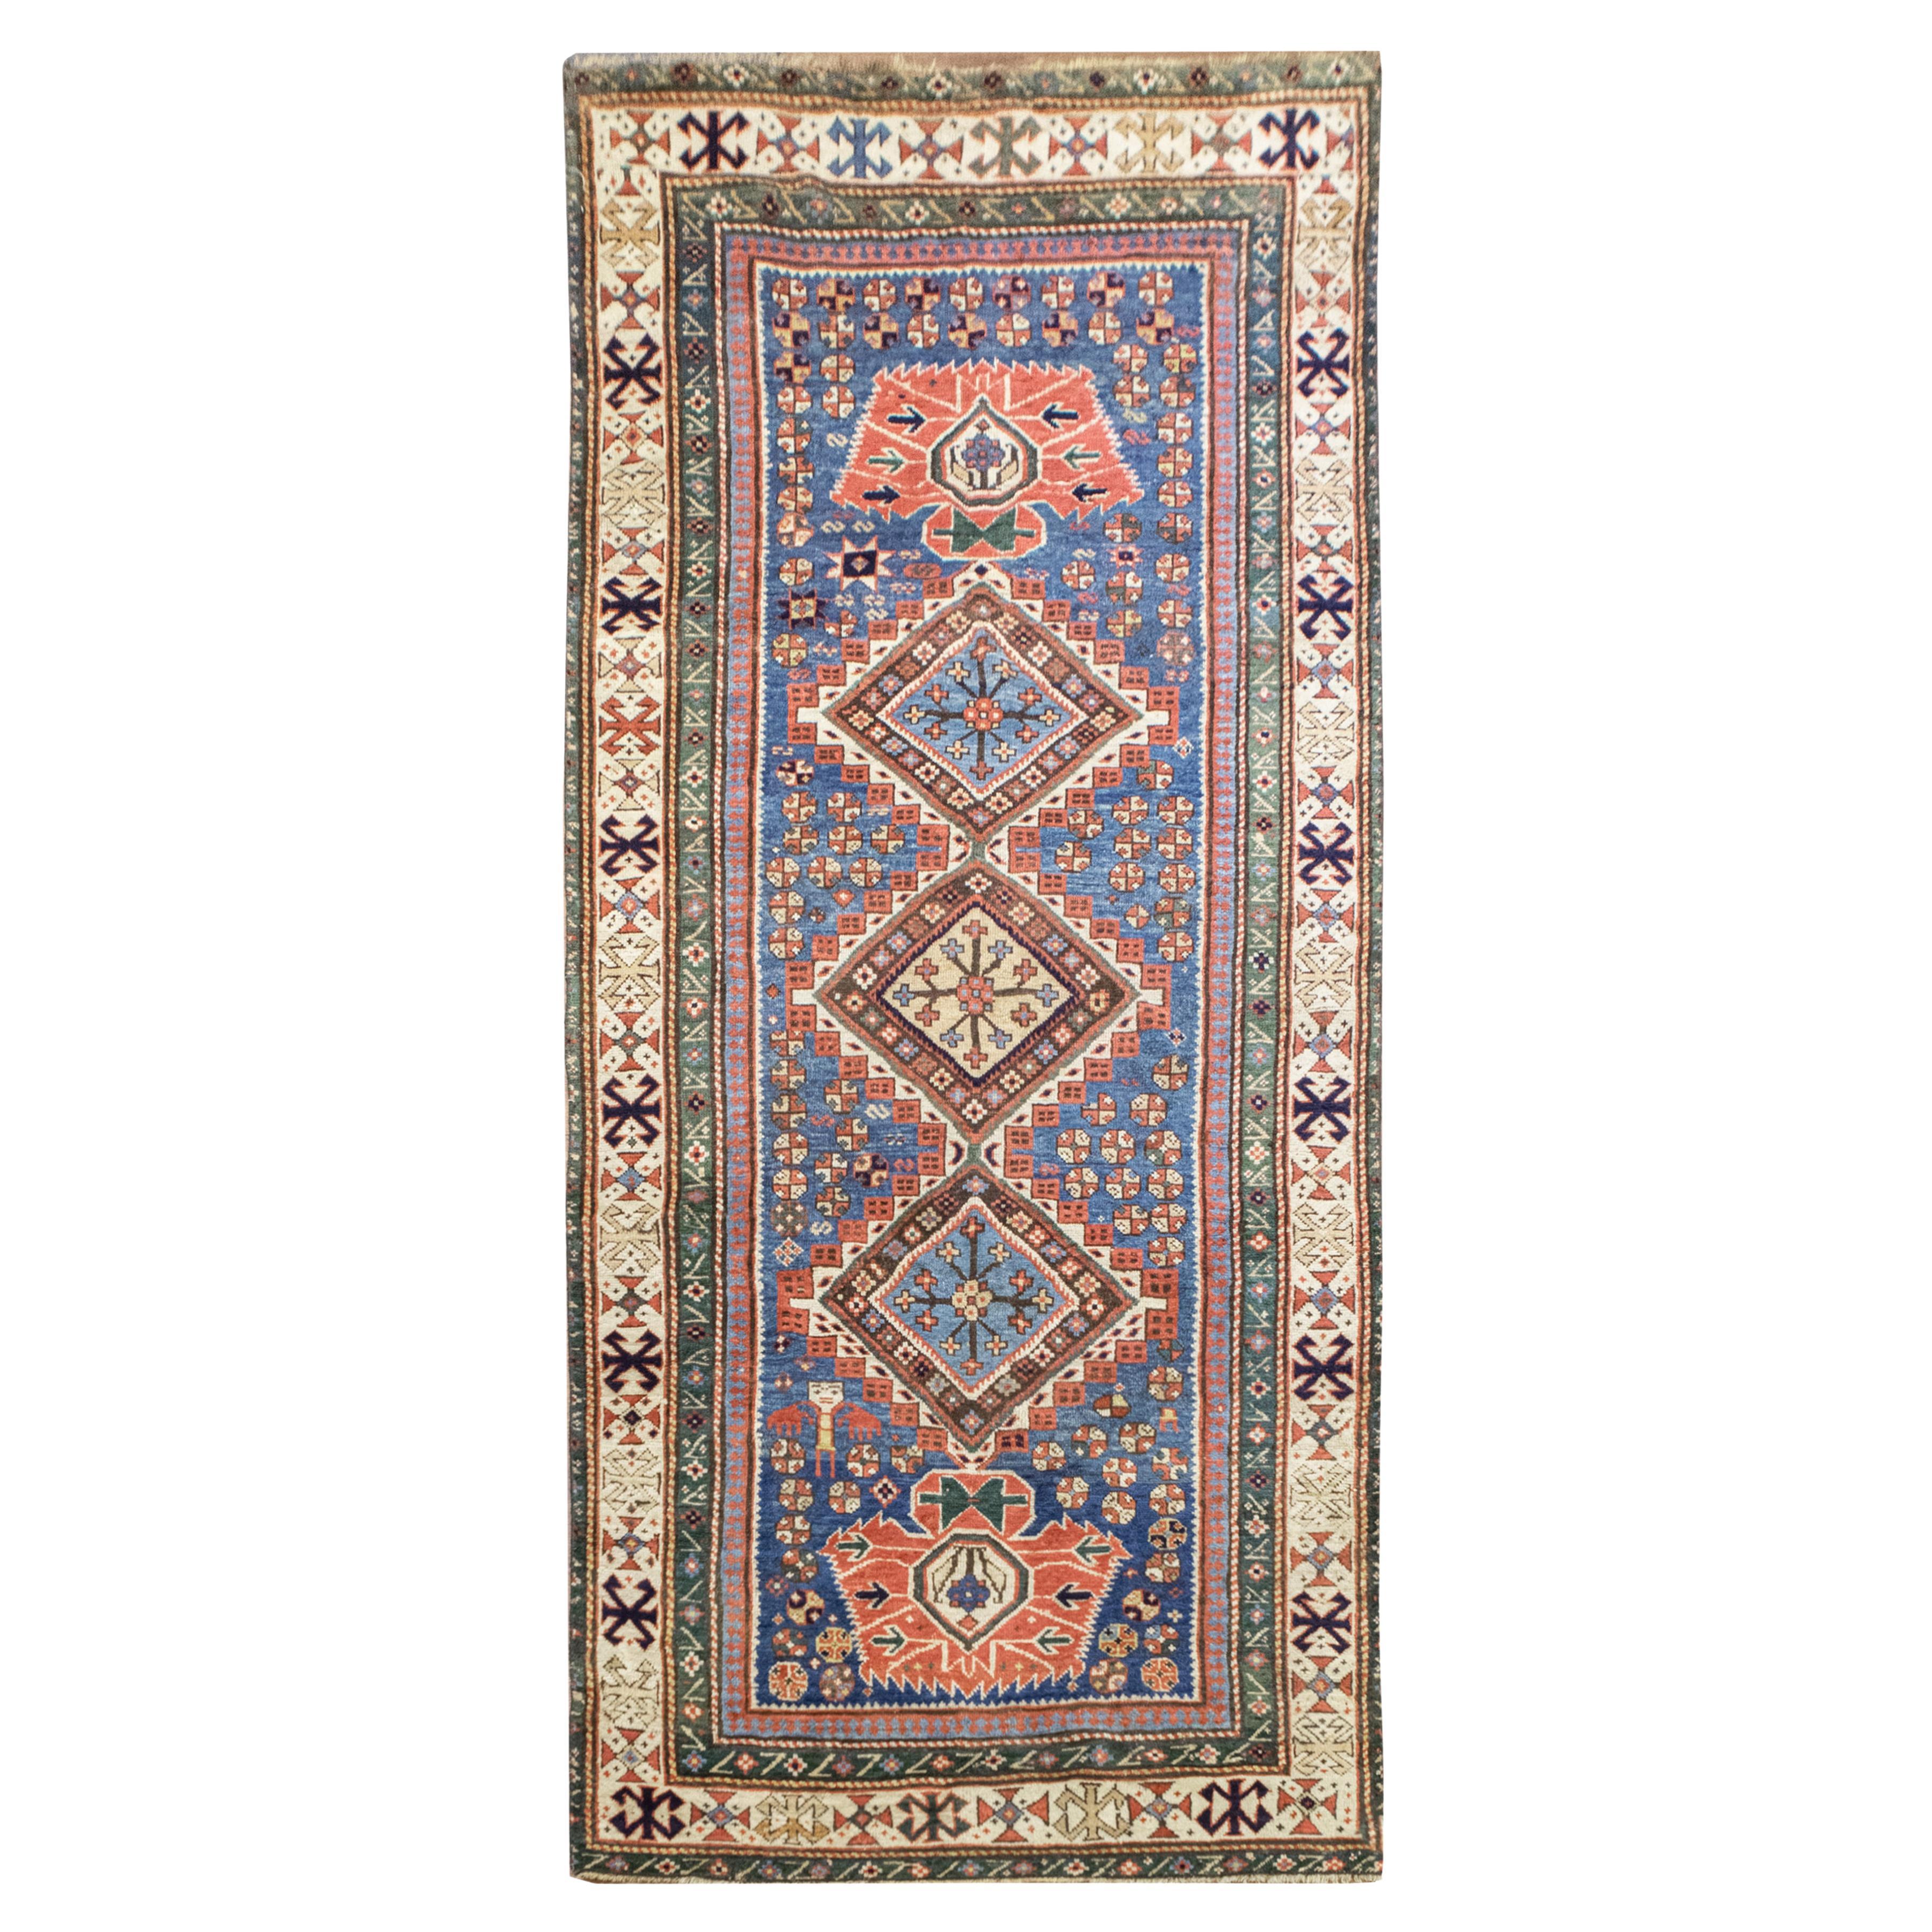 Tapis de couloir de luxe en laine fine persane antique tissée à la main bleu clair/ivoire